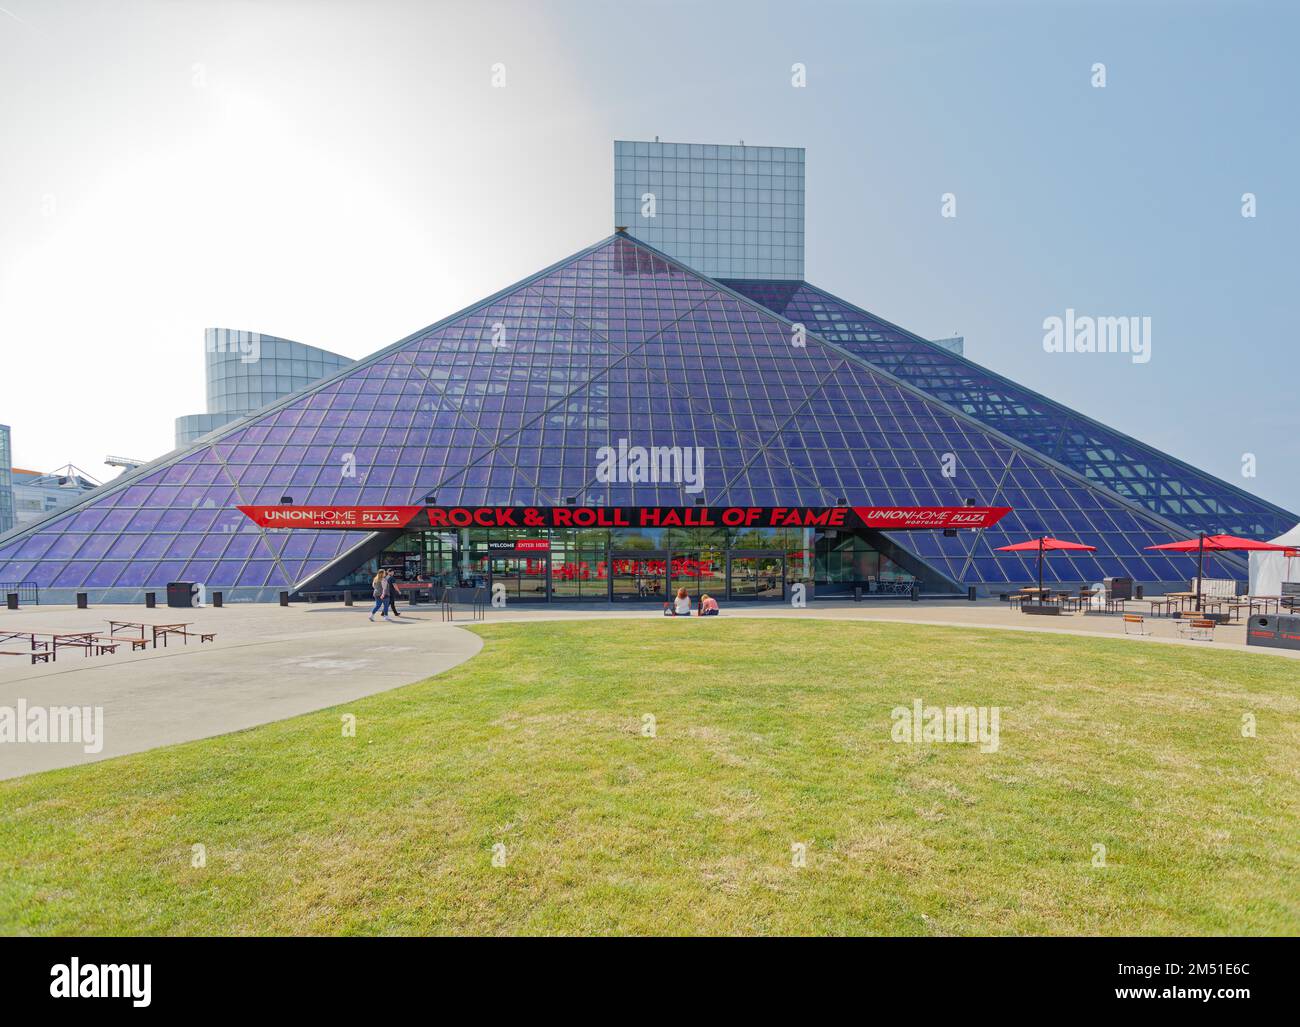 I.M. Die von Pei entworfene Rock and Roll Hall of Fame wurde 1995 eröffnet und wurde zu einer der beliebtesten Touristenattraktionen von Cleveland. Stockfoto